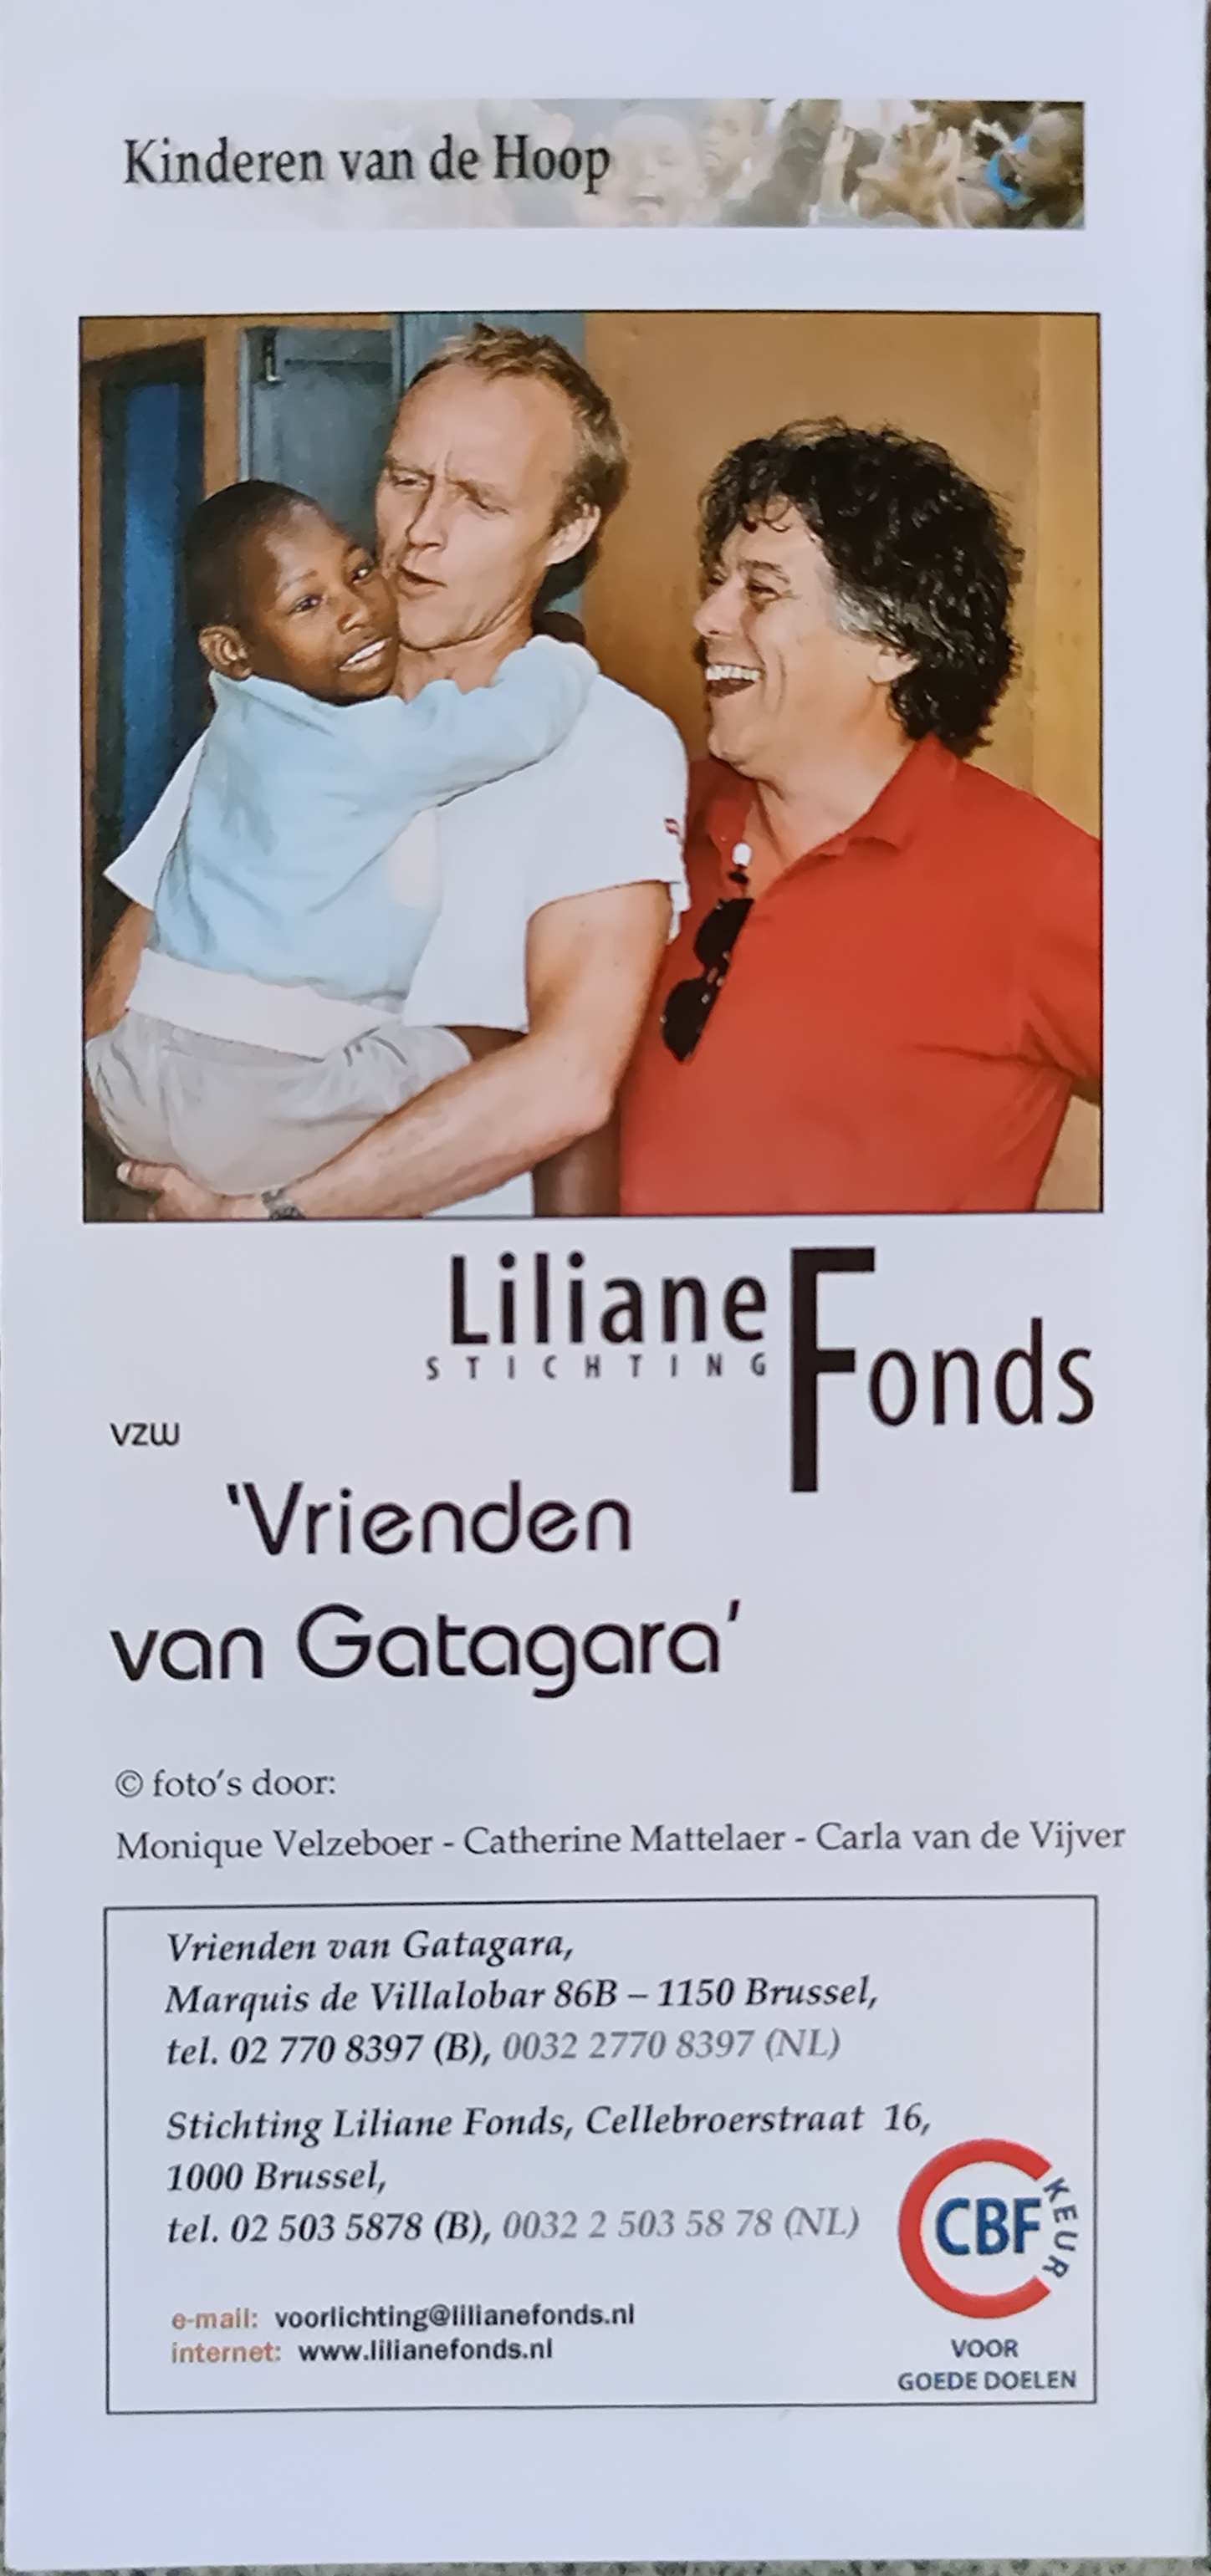 Johan steunt het Lilianefonds (2005)